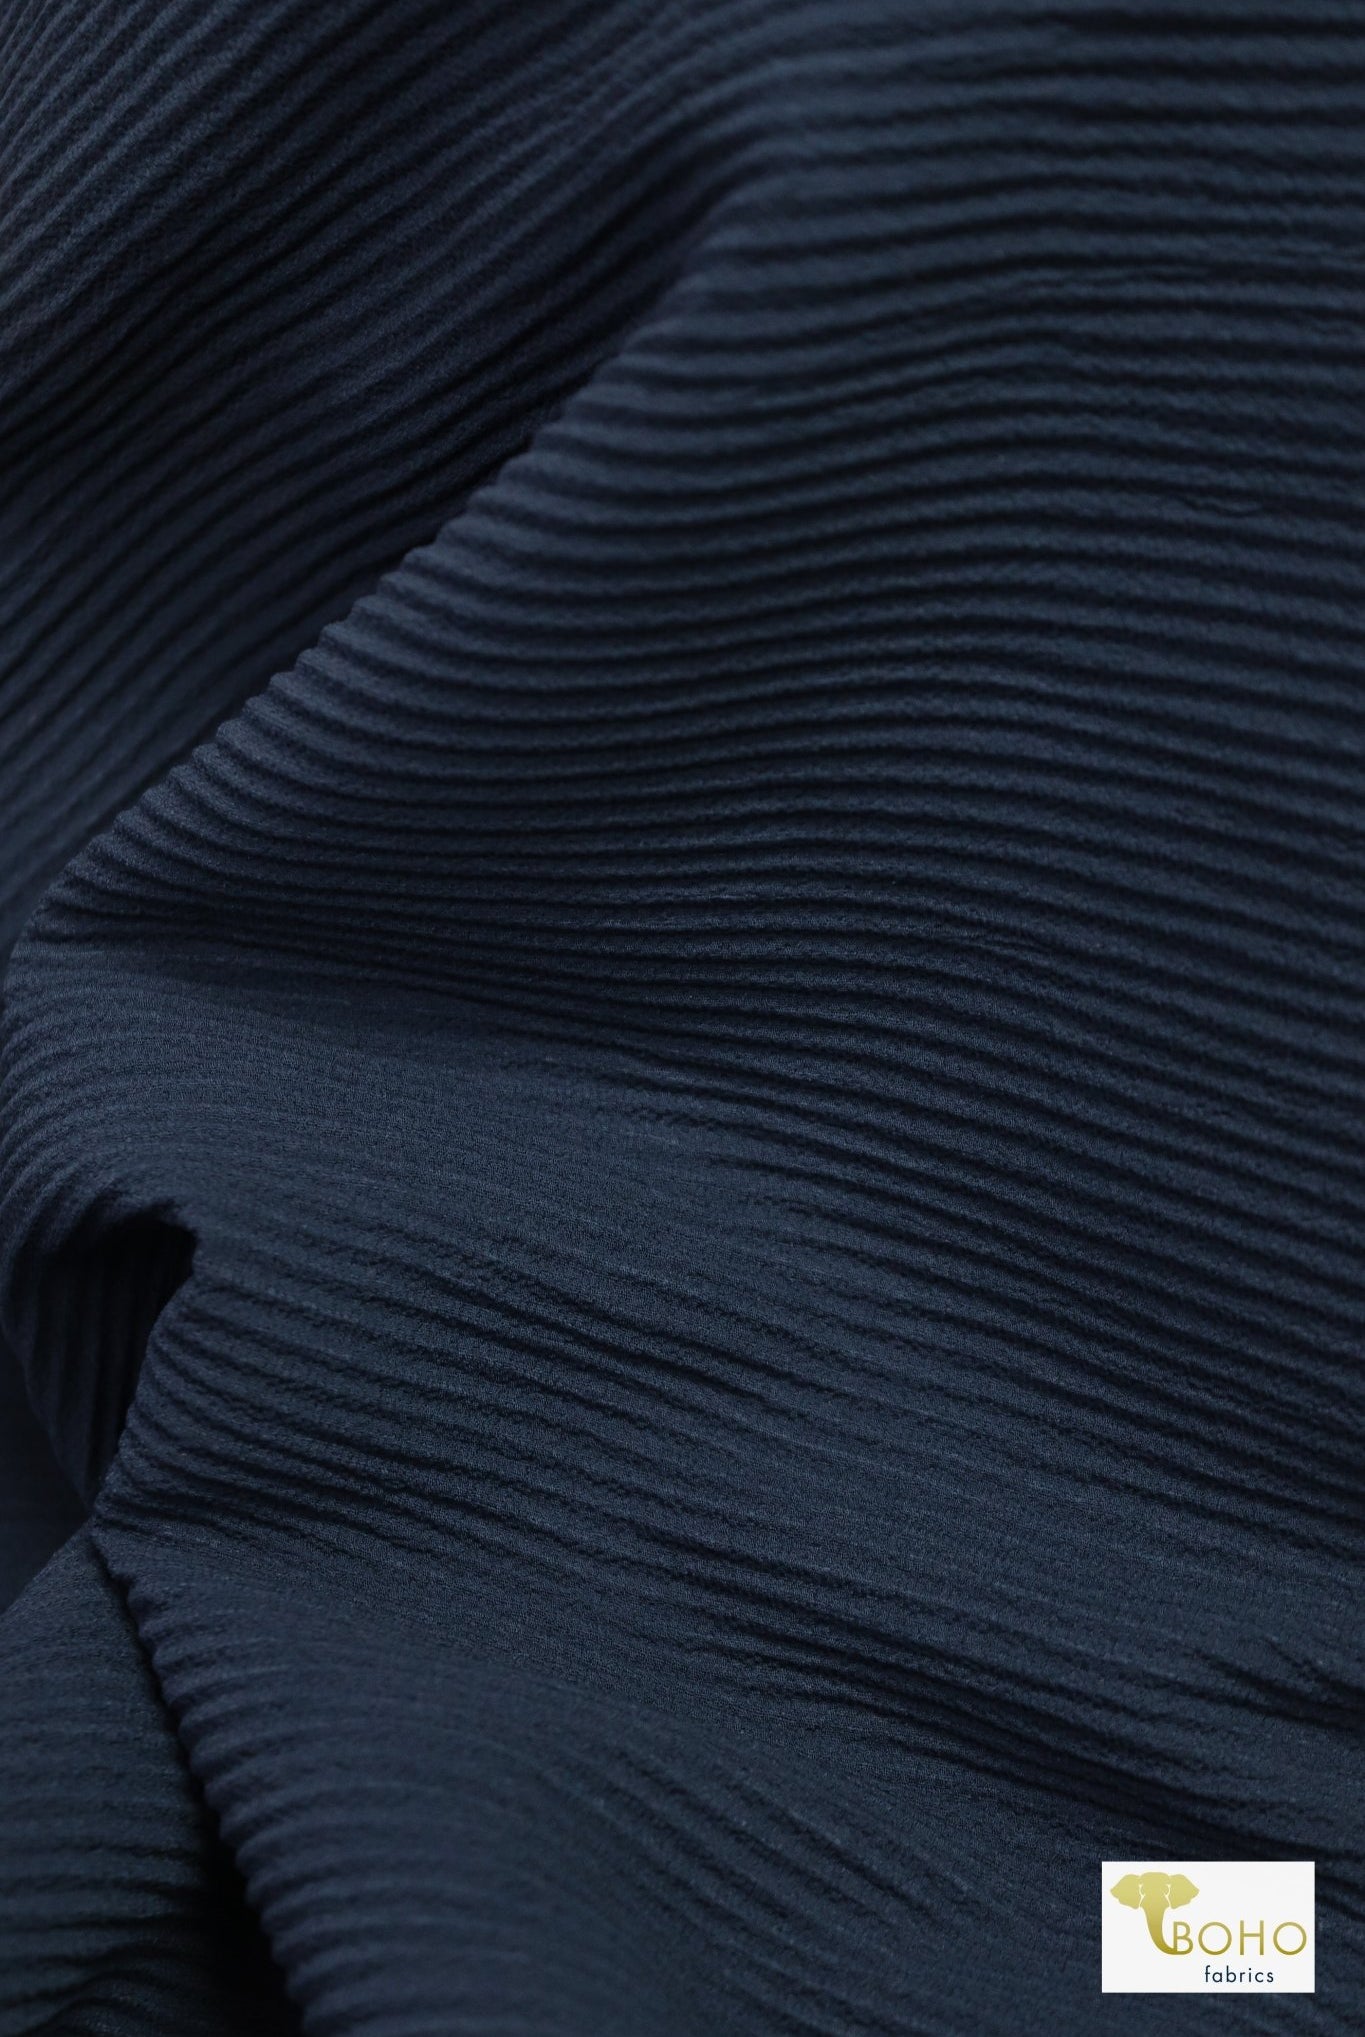 Navy, Pleated Woven - Boho Fabrics